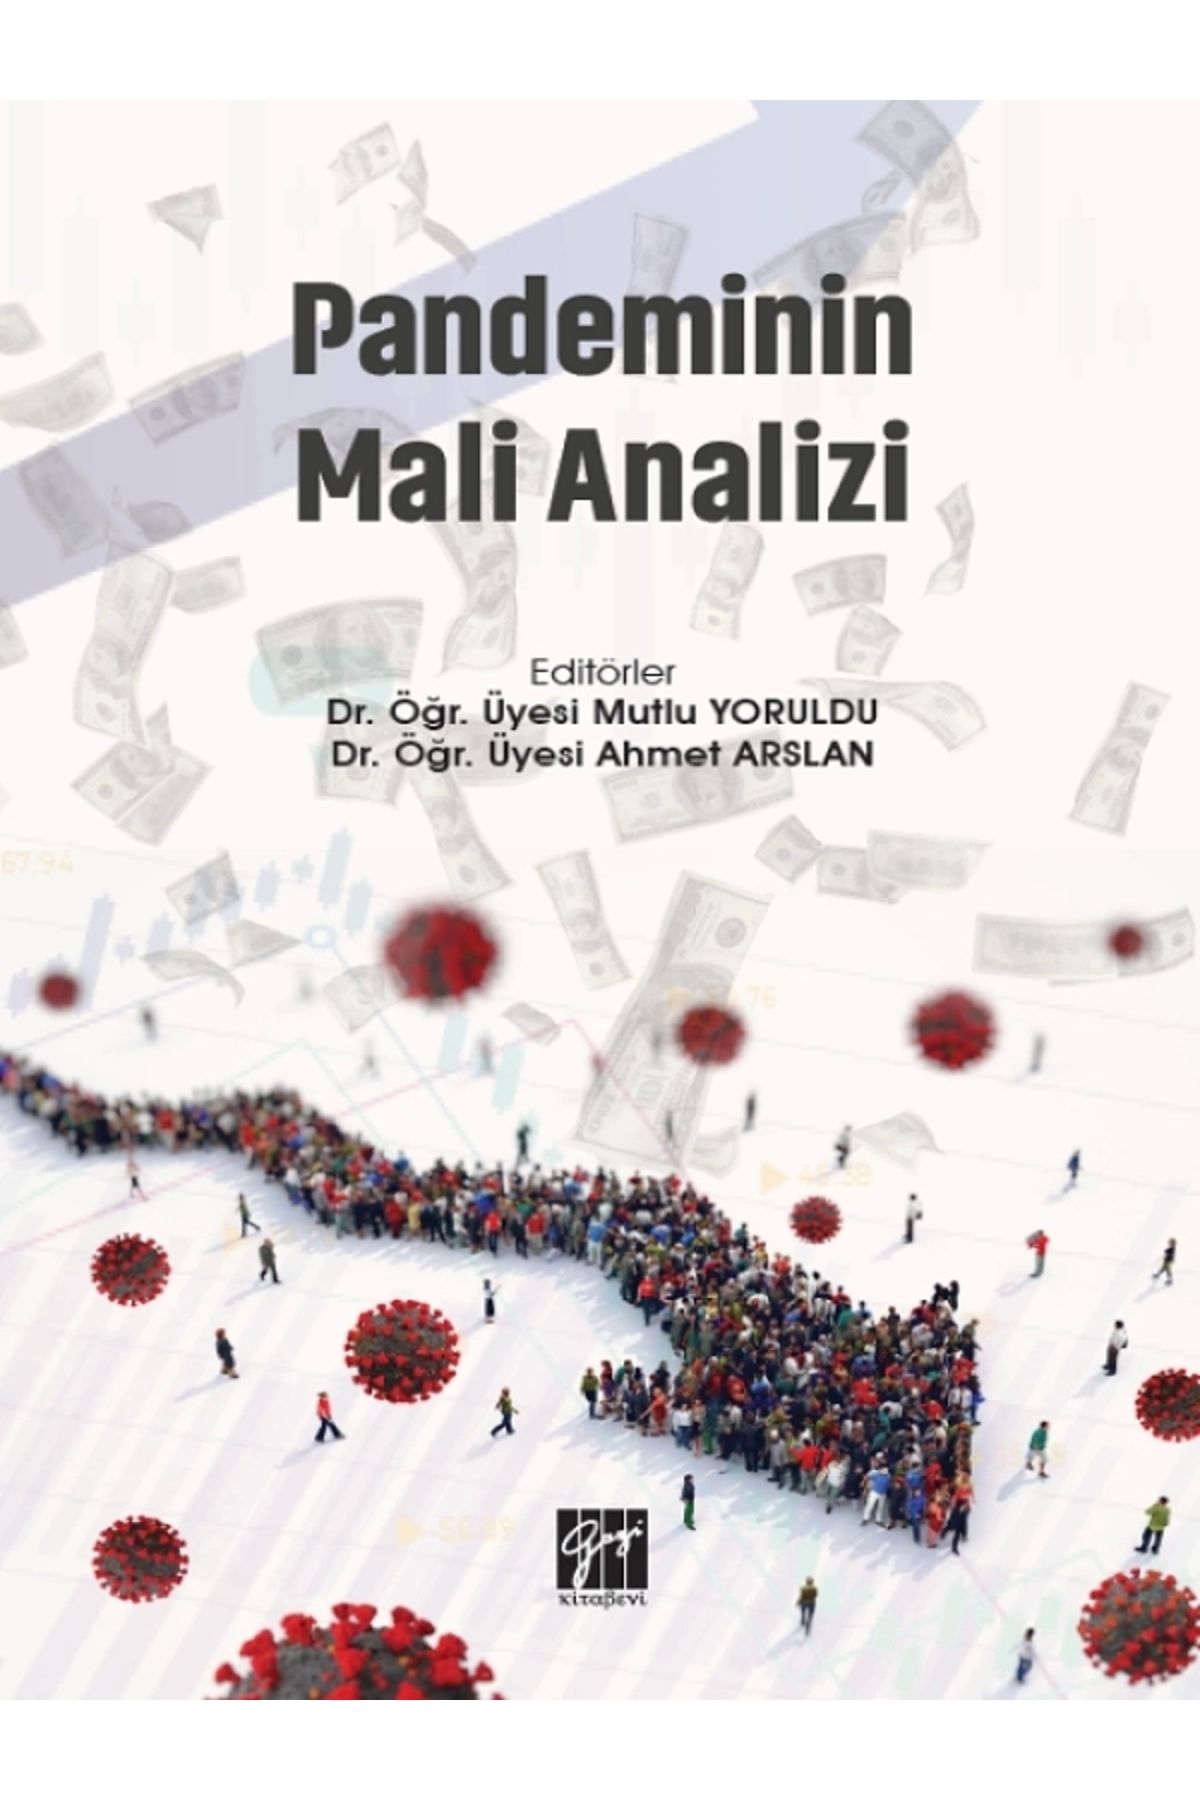 Gazi Kitabevi Pandeminin Mali Analizi kitabı - Gazi Kitabevi